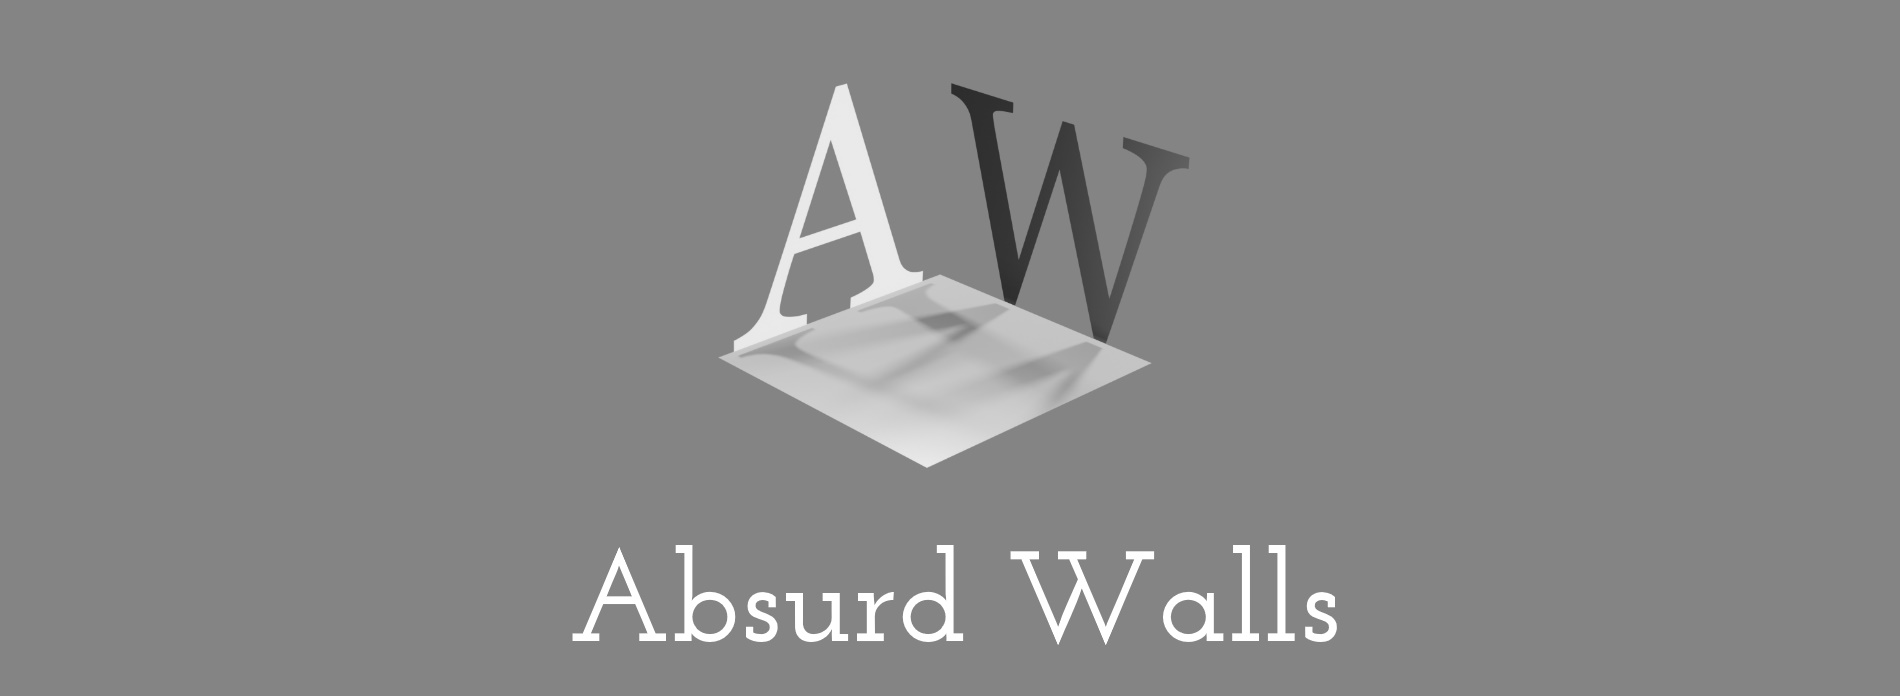 Absurd Walls